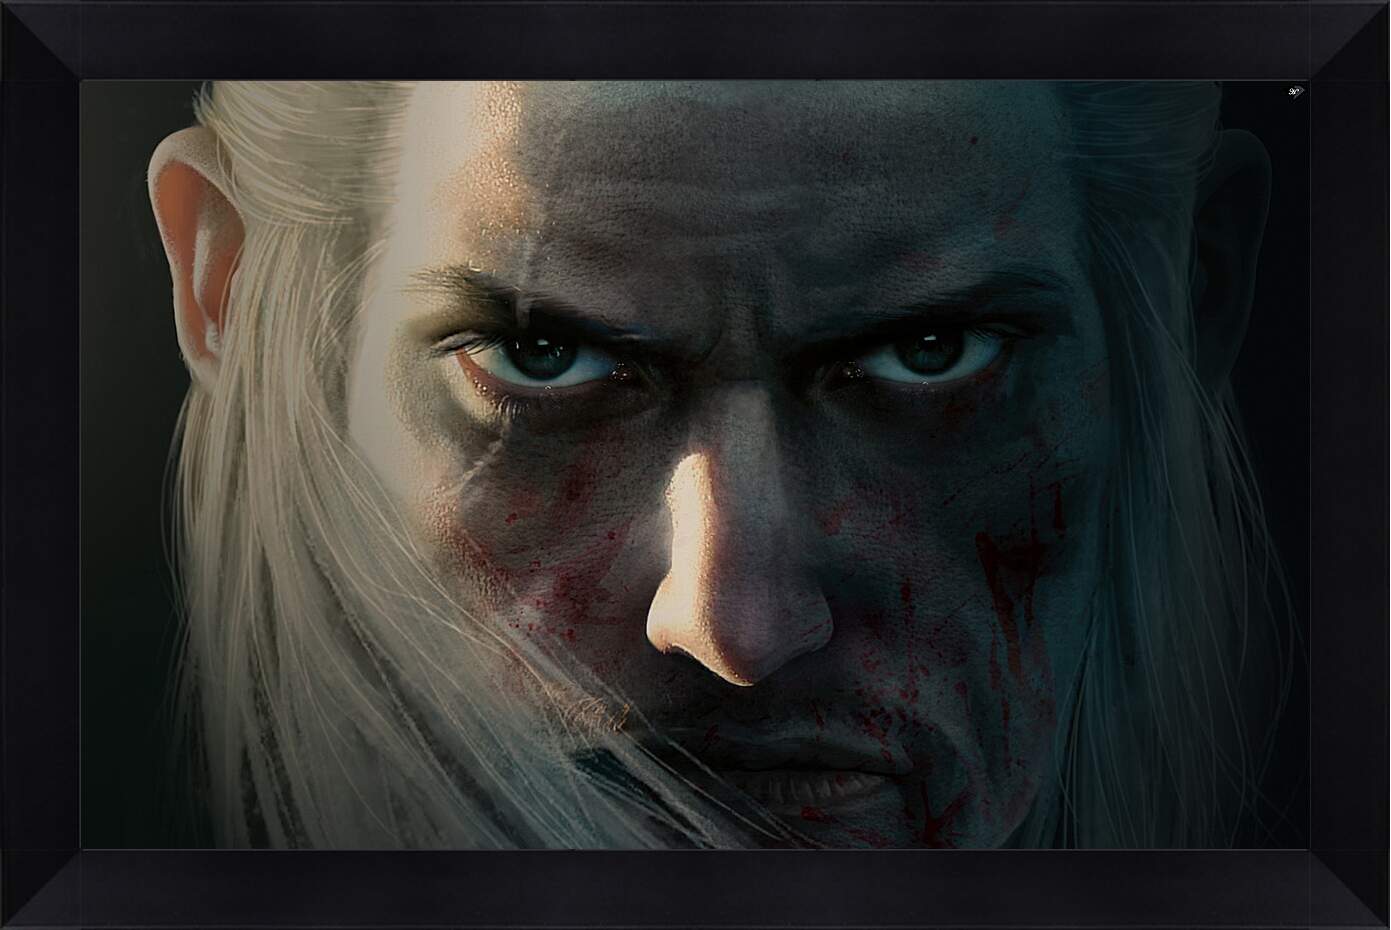 Картина в раме - Viking: Battle For Asgard
